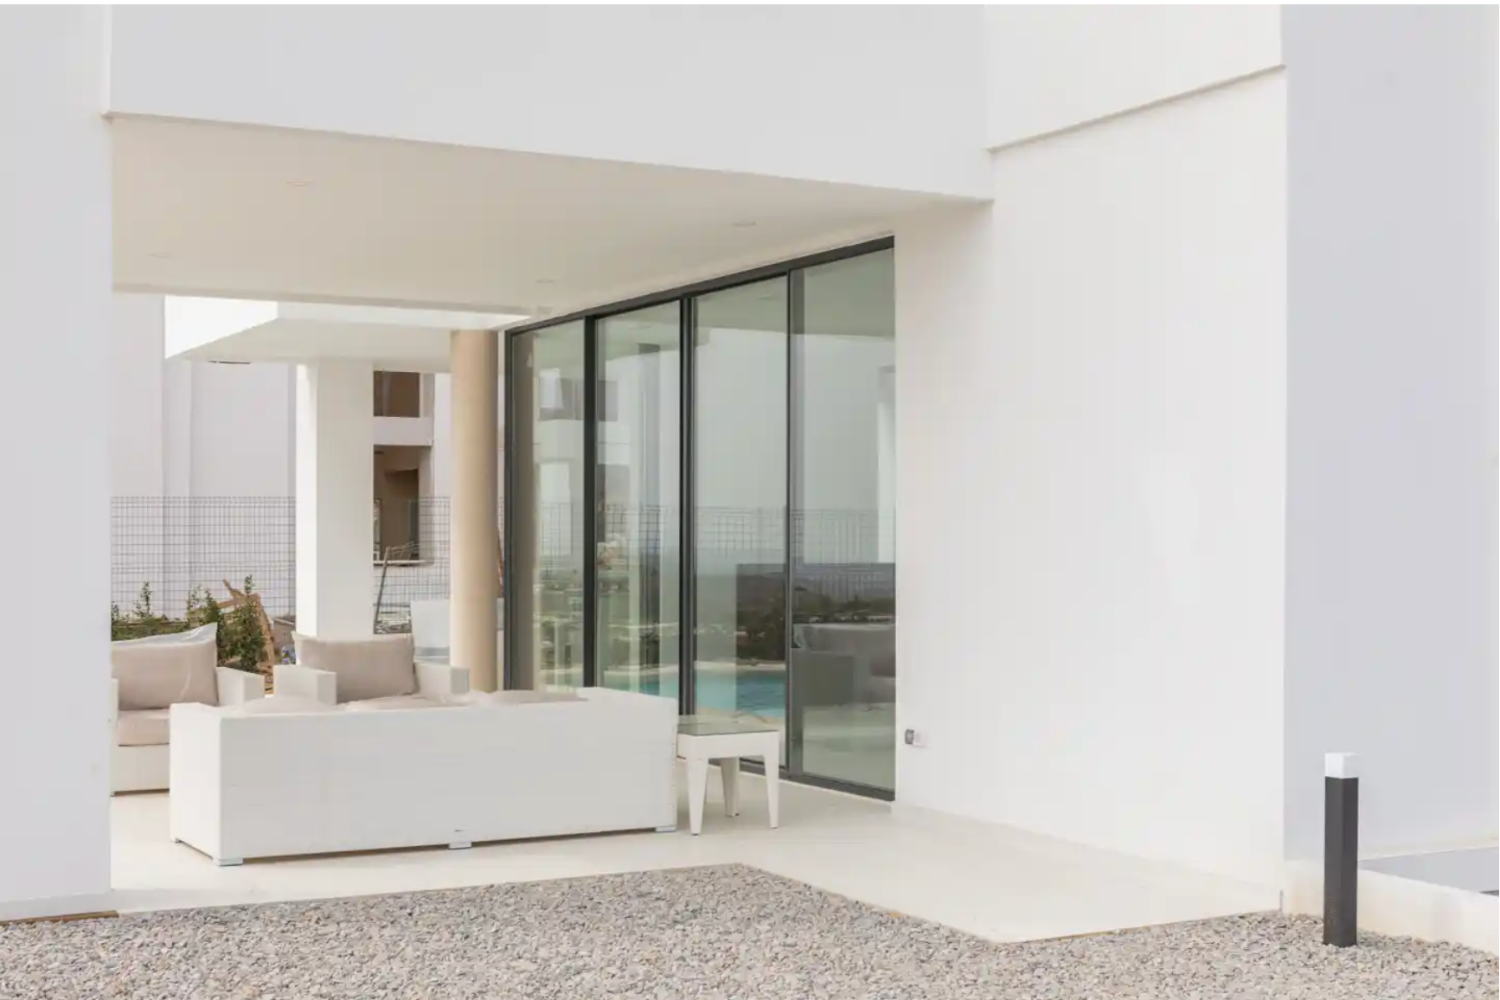 Villa moderna con vistas panorámicas al mar Mediterráneo - Costa del Sol